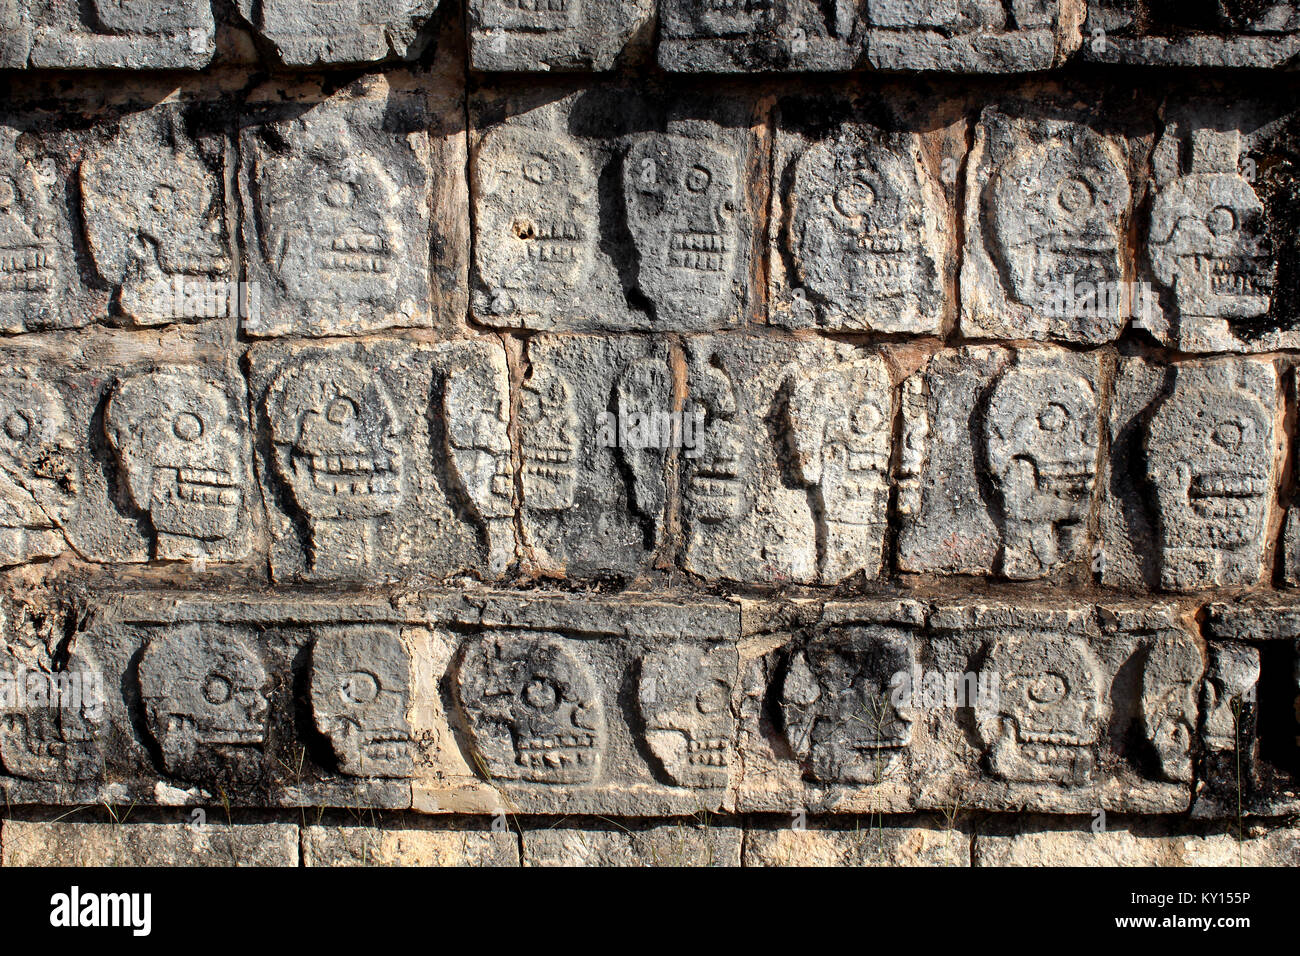 Wall of Skulls, Chichen Itza, Mexico Stock Photo